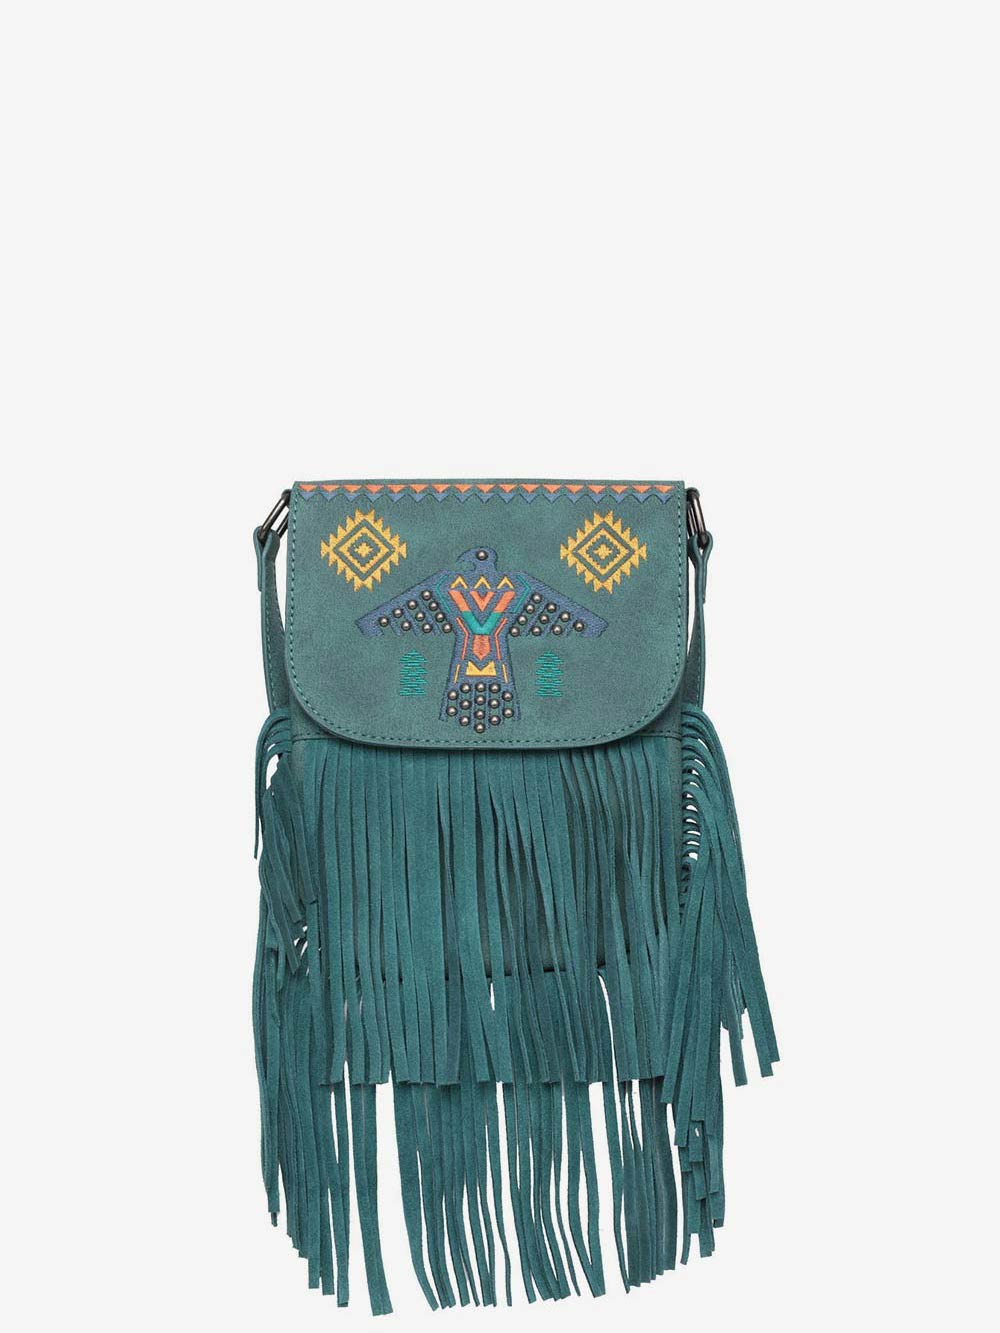 Wrangler Embroidered Thunderbird Aztec Fringe Crossbody - Montana West World